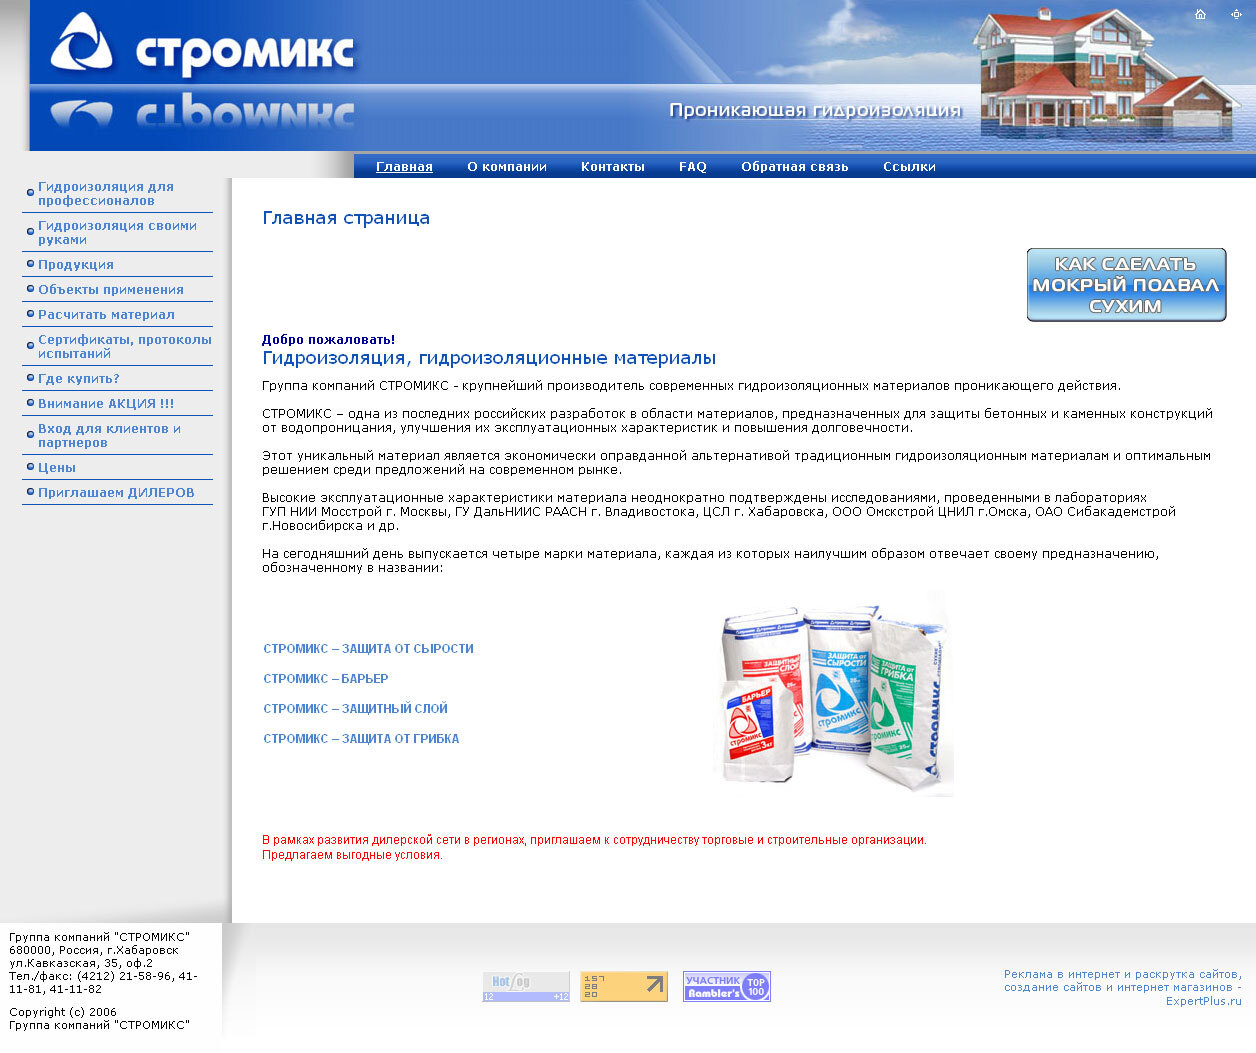 Сайт компании "Стромикс" - гидроизоляция и гидроизоляционные материалы